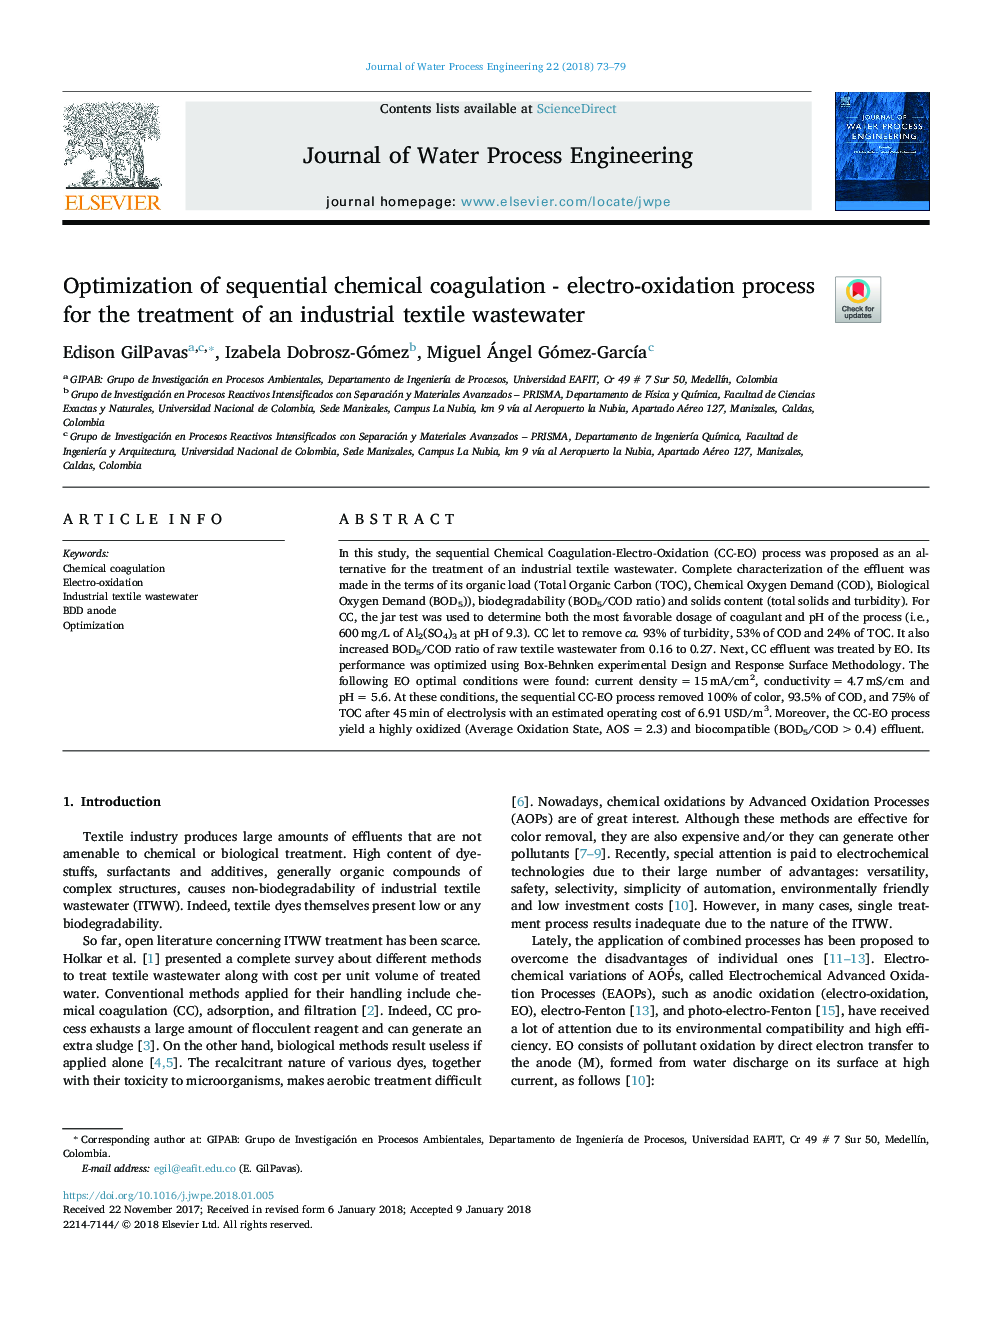 بهینه سازی انعقاد شیمیایی ترتیبی - فرایند الکترو اکسیداسیون برای درمان پساب صنعتی نساجی صنعتی 